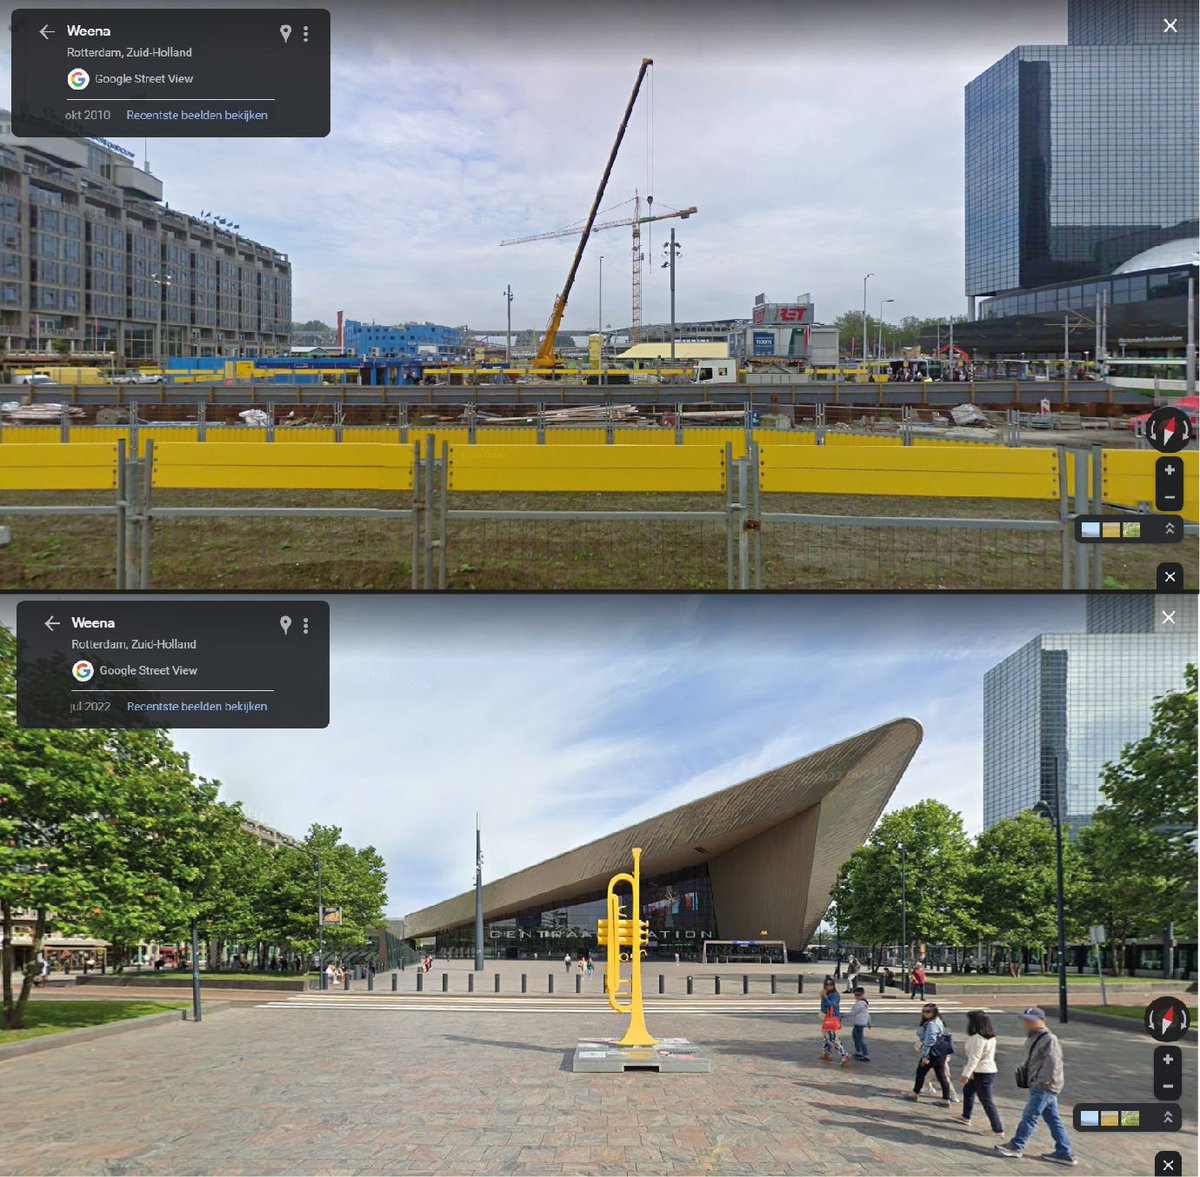 Dag 23 | Rotterdam heeft de laatste jaren een enorme metamorfose ondergaan. Vandaag het #Stationsplein en het #CentraalStation. We vergeten wel eens wat een bouwput het was gedurende jaren, maar het eindresultaat mag er zeker zijn. Een prachtige entree van de stad!